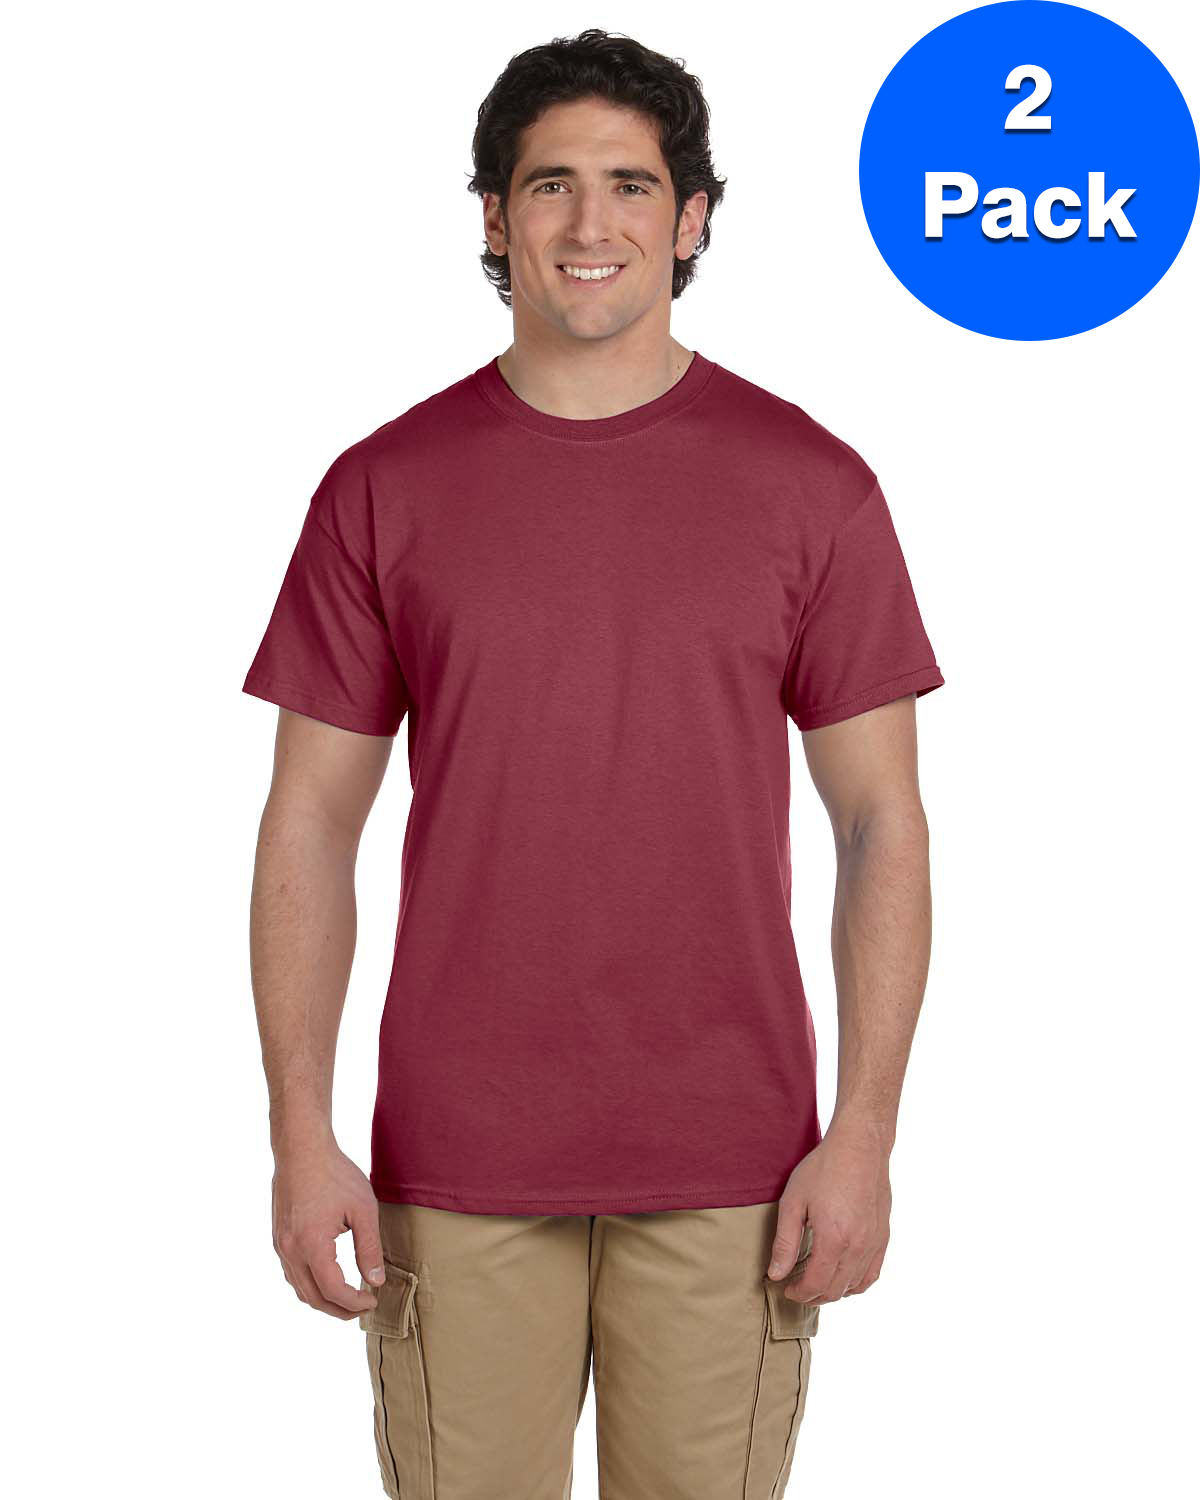 Mens 5.2 oz., 50/50 ComfortBlend EcoSmart T-Shirt 5170 (2 PACK) - image 1 of 3